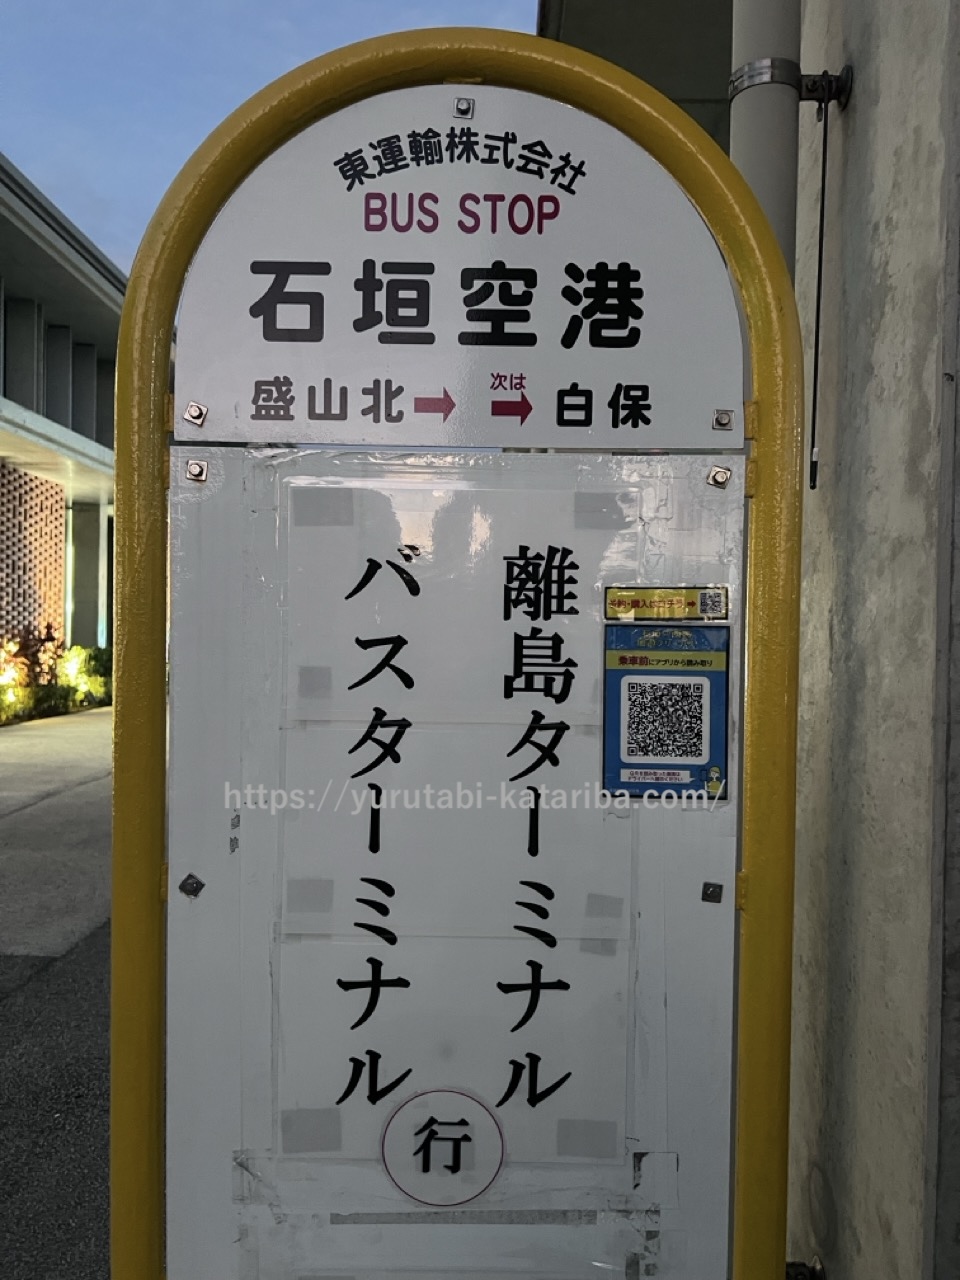 石垣島のバス会社、おトクな切符を紹介しましたがいかがでしたか？